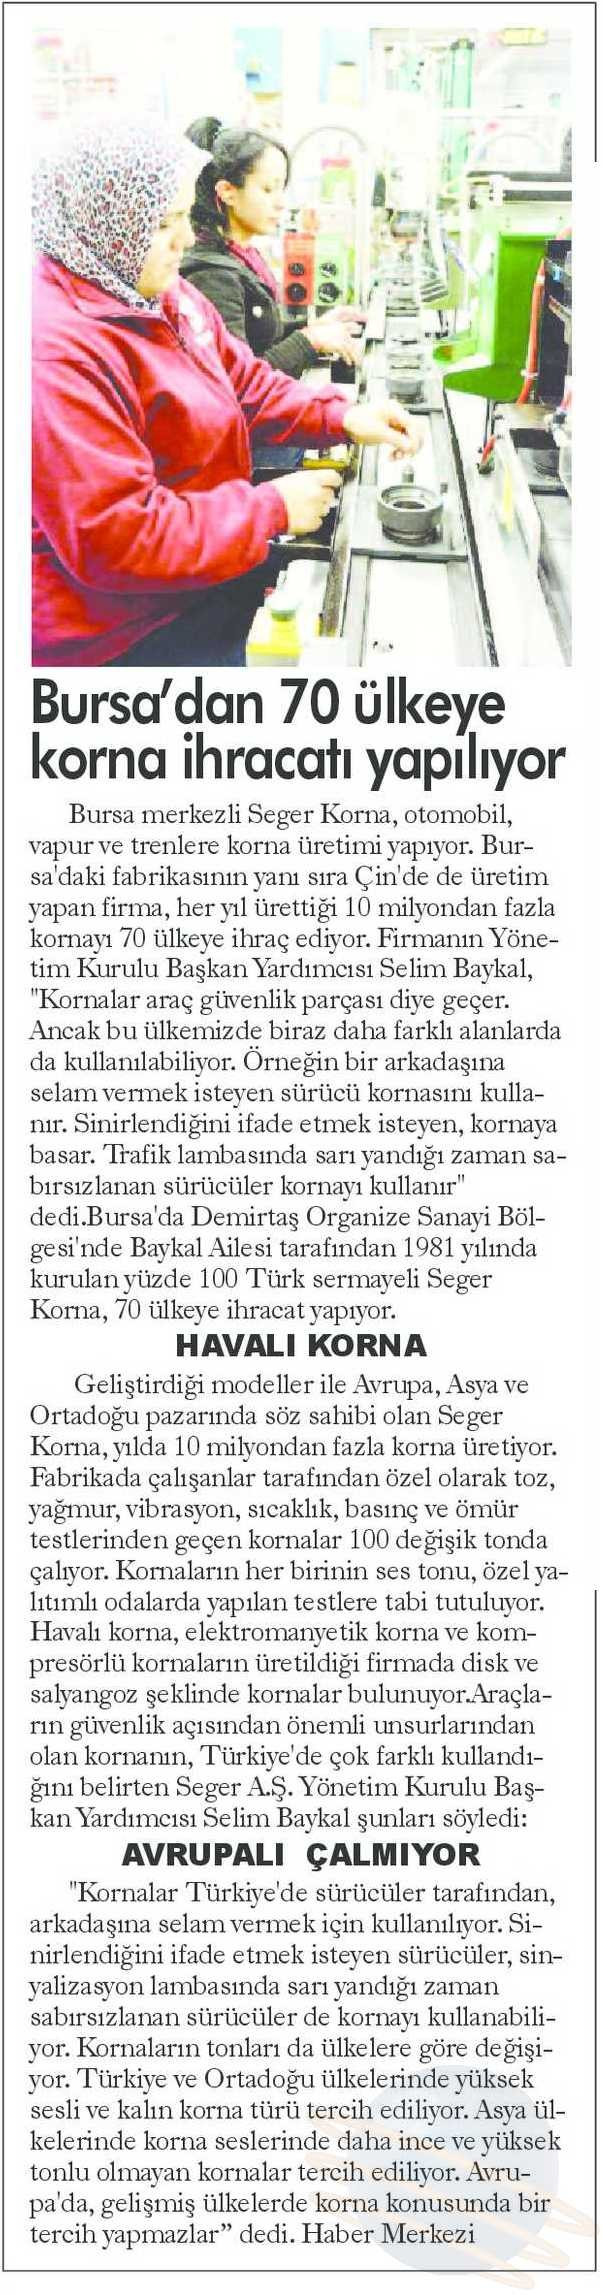 Bursa'dan 70 ülkeye korna ihracatı yapılıyor.. Yeni Marmara(26/01/2016)